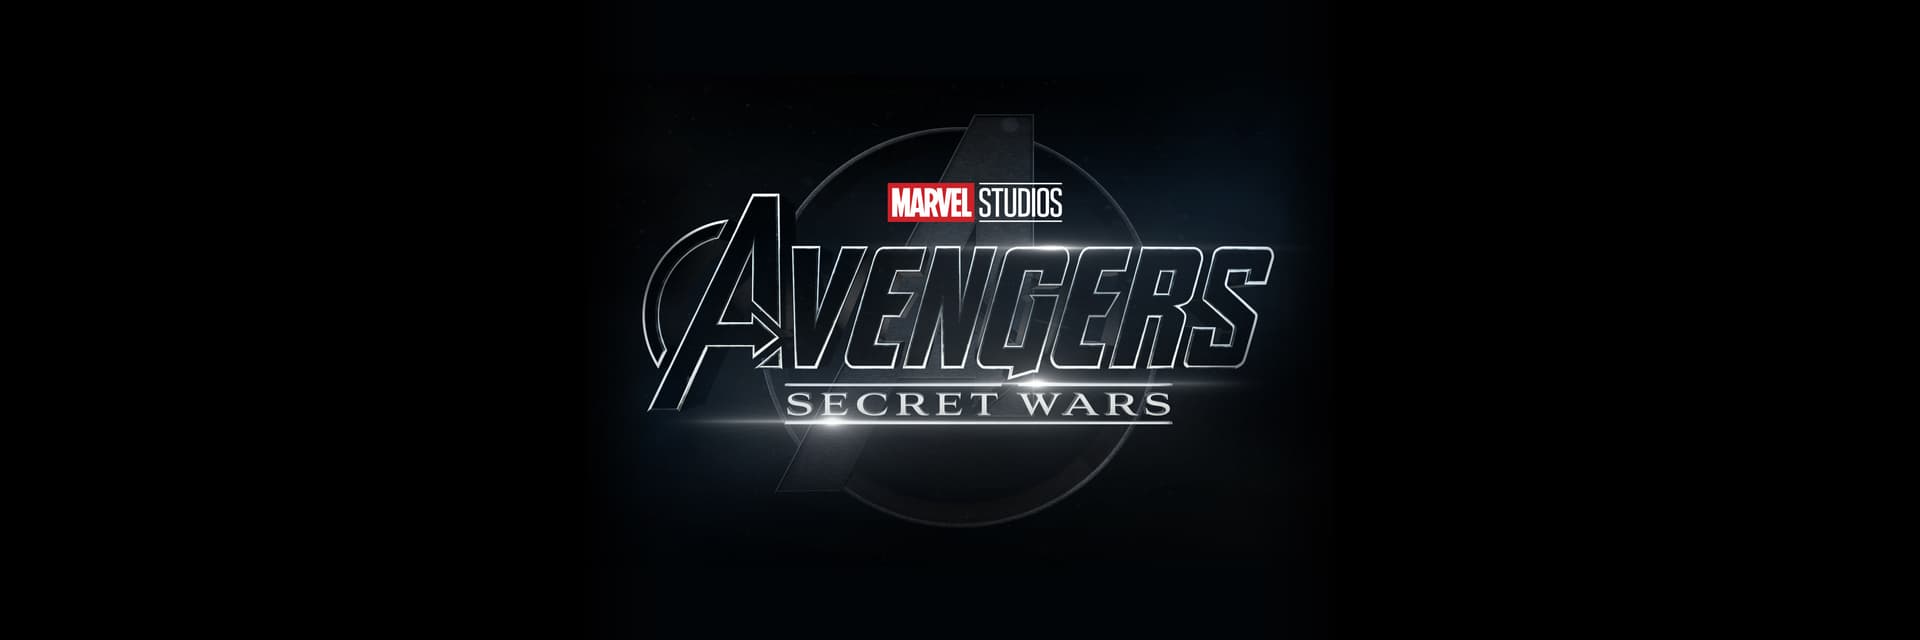 Marvel Studios' Avengers: Secret Wars Movie Logo on Black